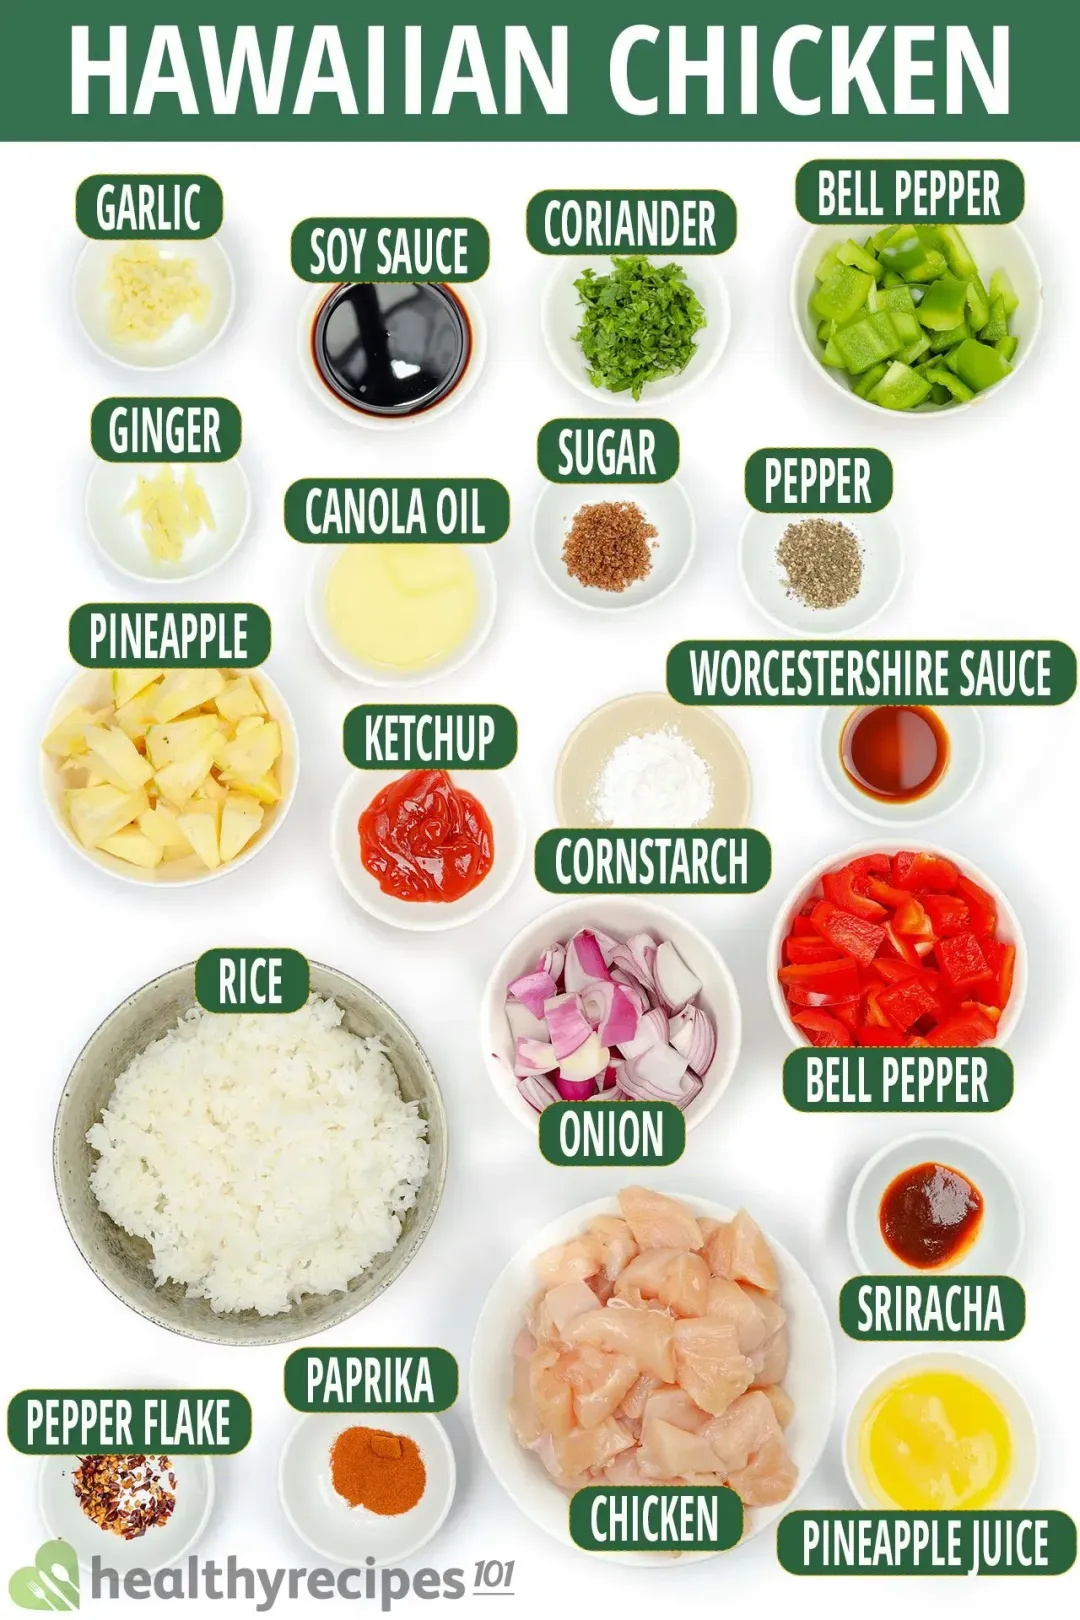 Ingredients for Hawaiian Chicken